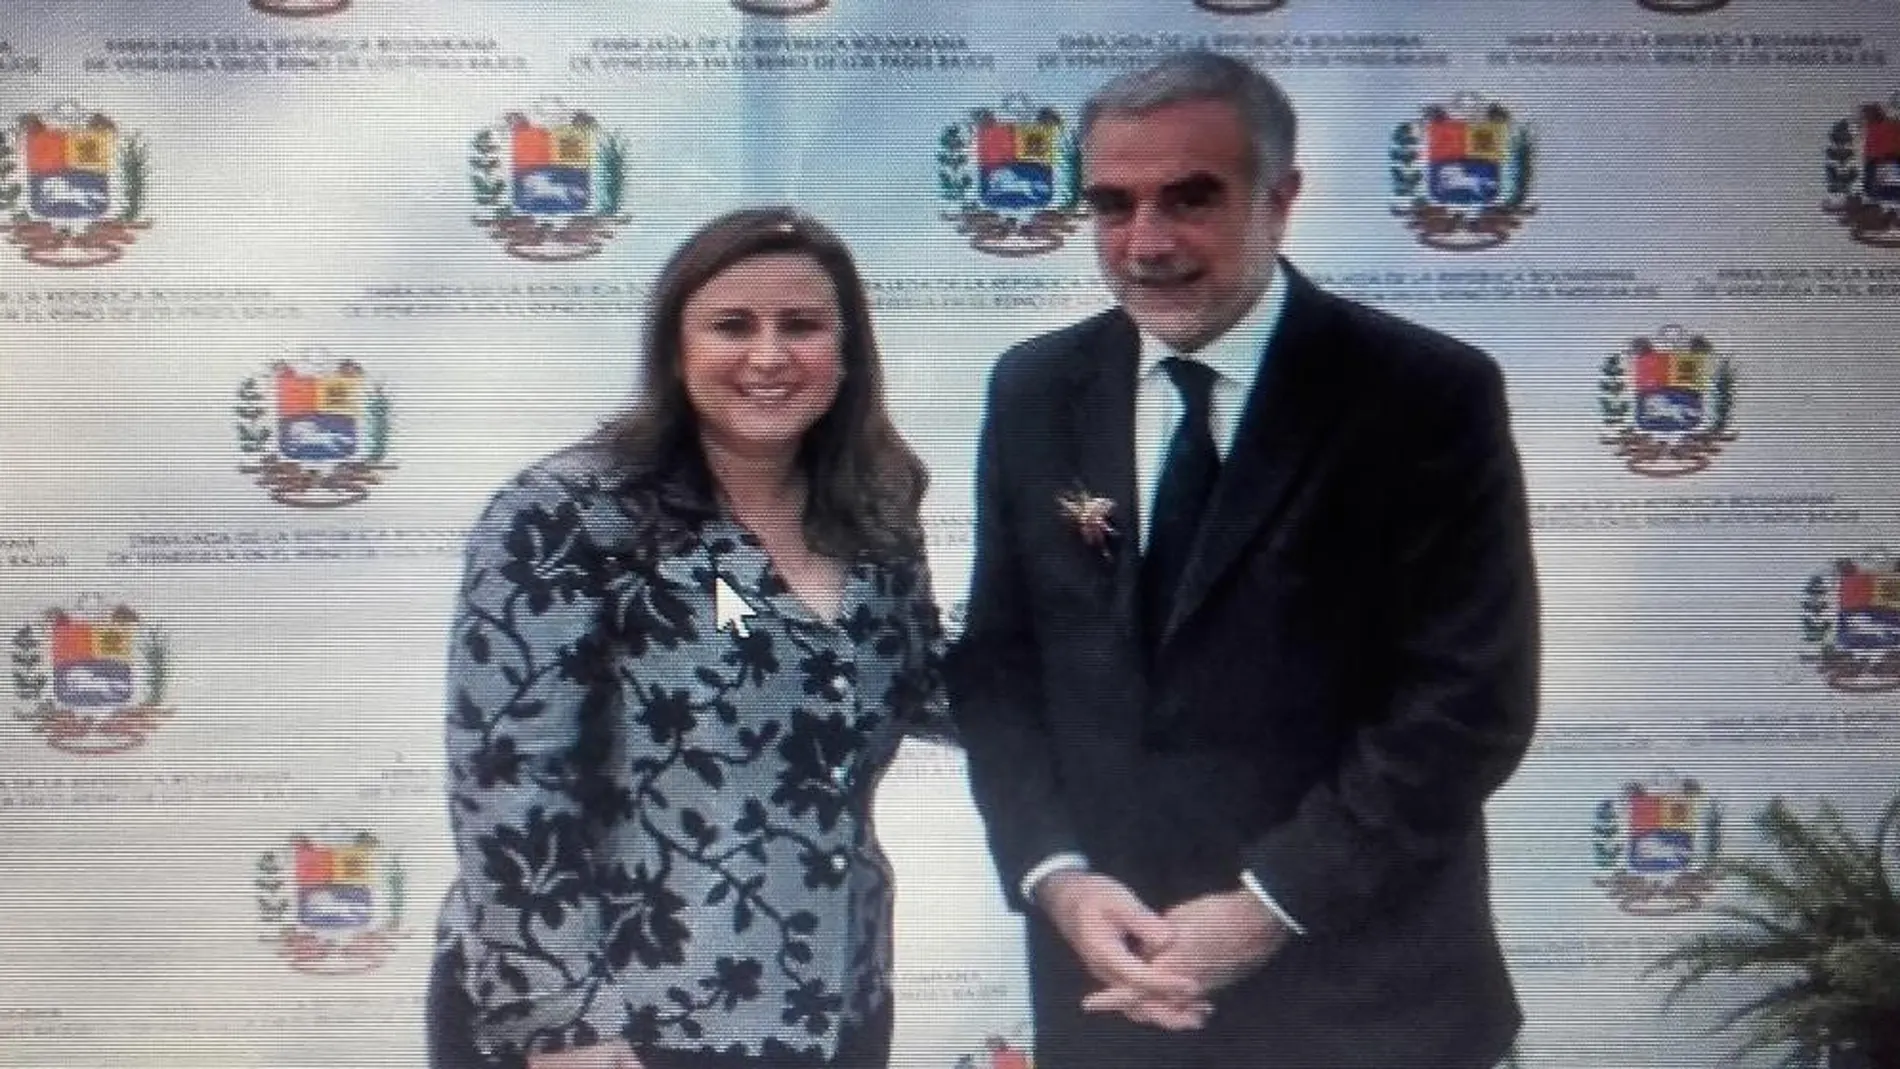 Fotografía del Fiscal Moreno Ocampo y la embajadora venezolana Haifa el Aissami